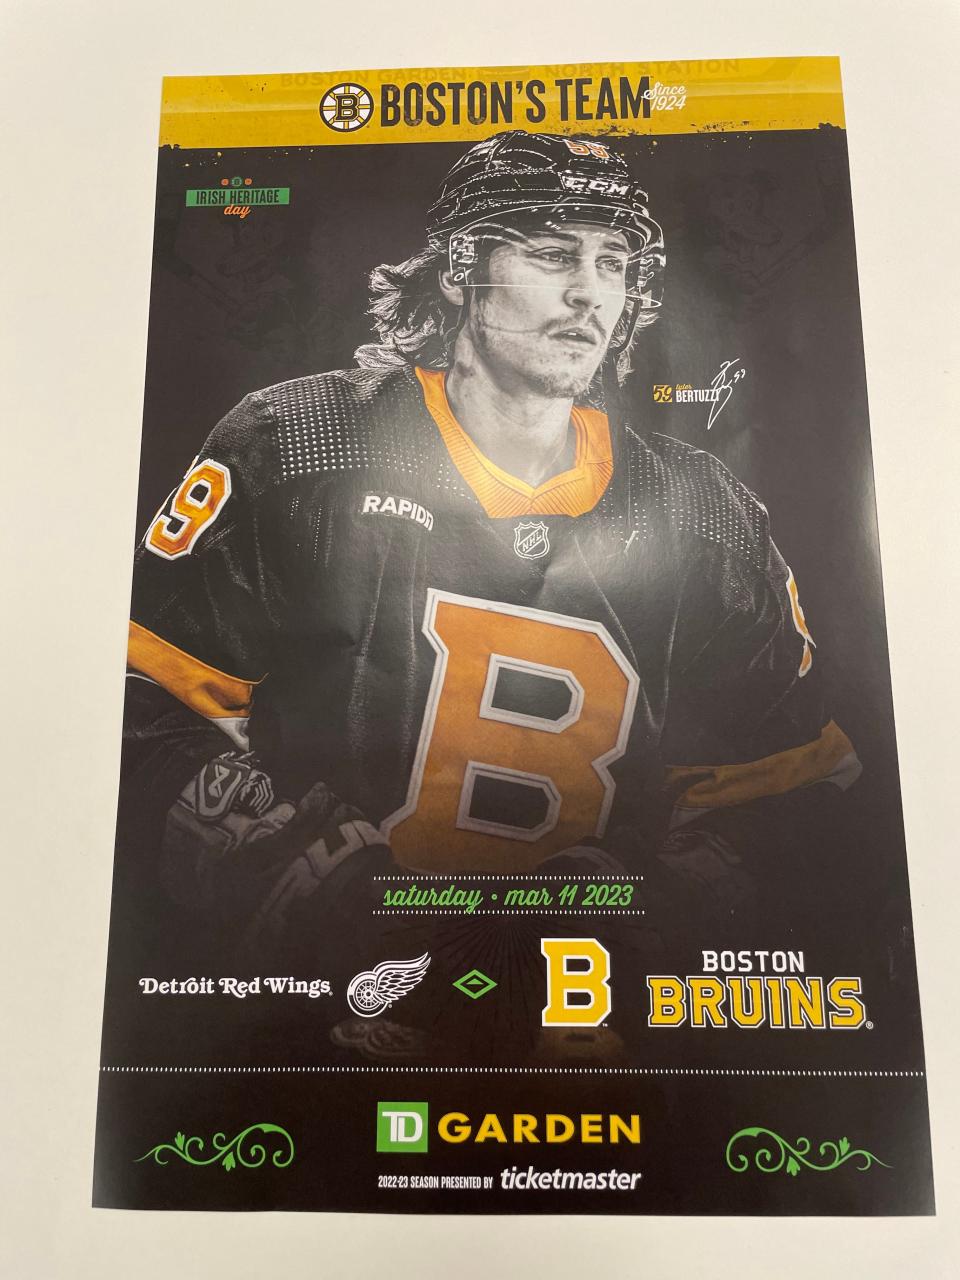 Boston Bruins poster of former Detroit Red Wings forward Tyler Bertuzzi.